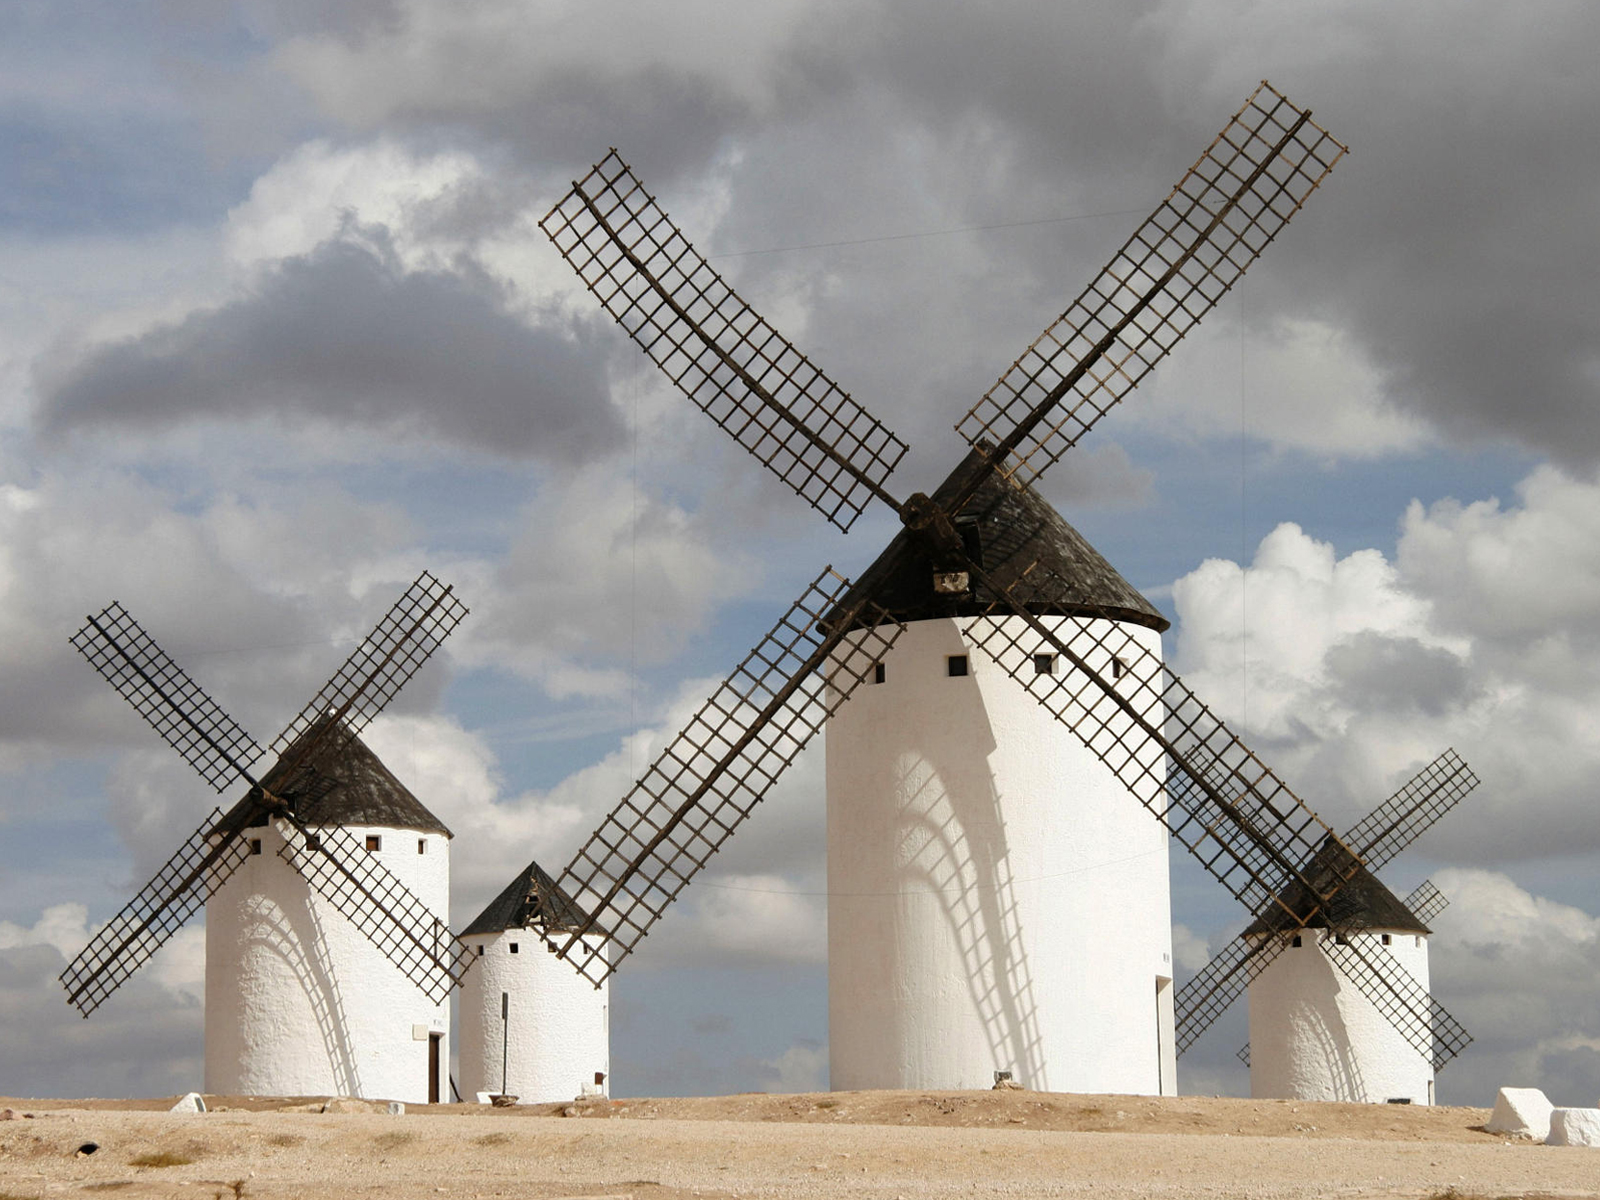 Fond d'ecran Windmills